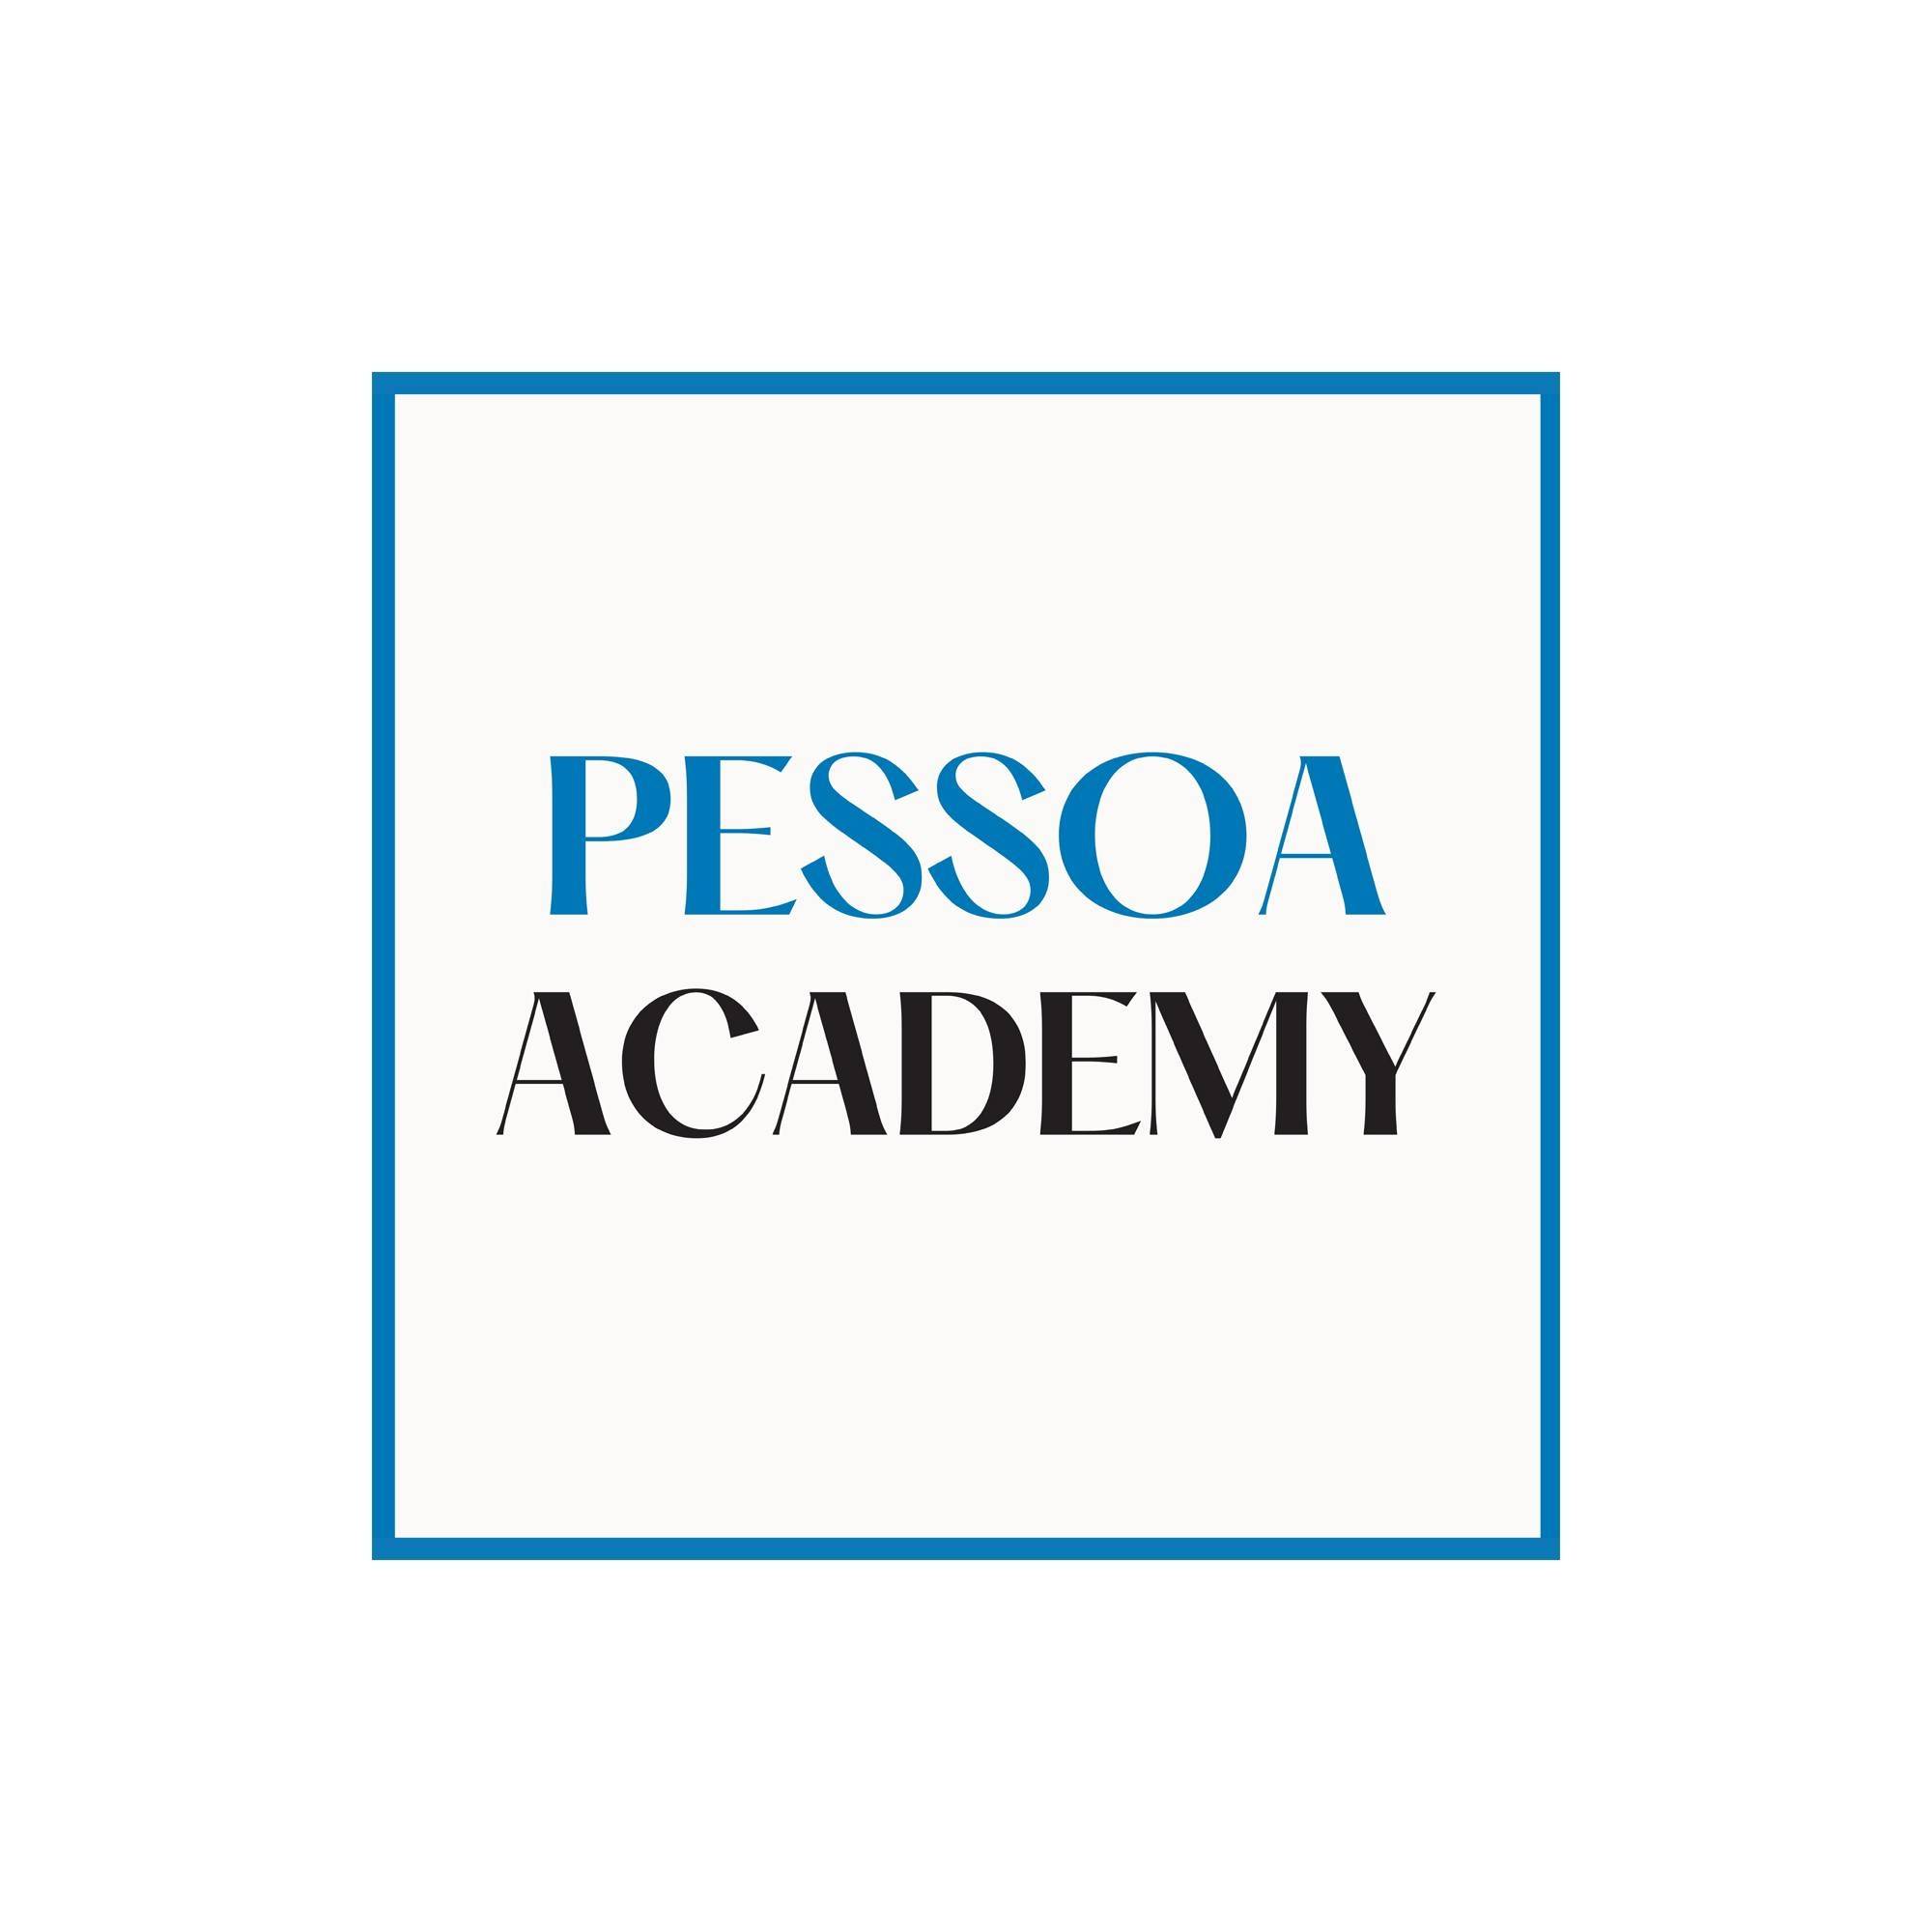  Pessoa Academy 